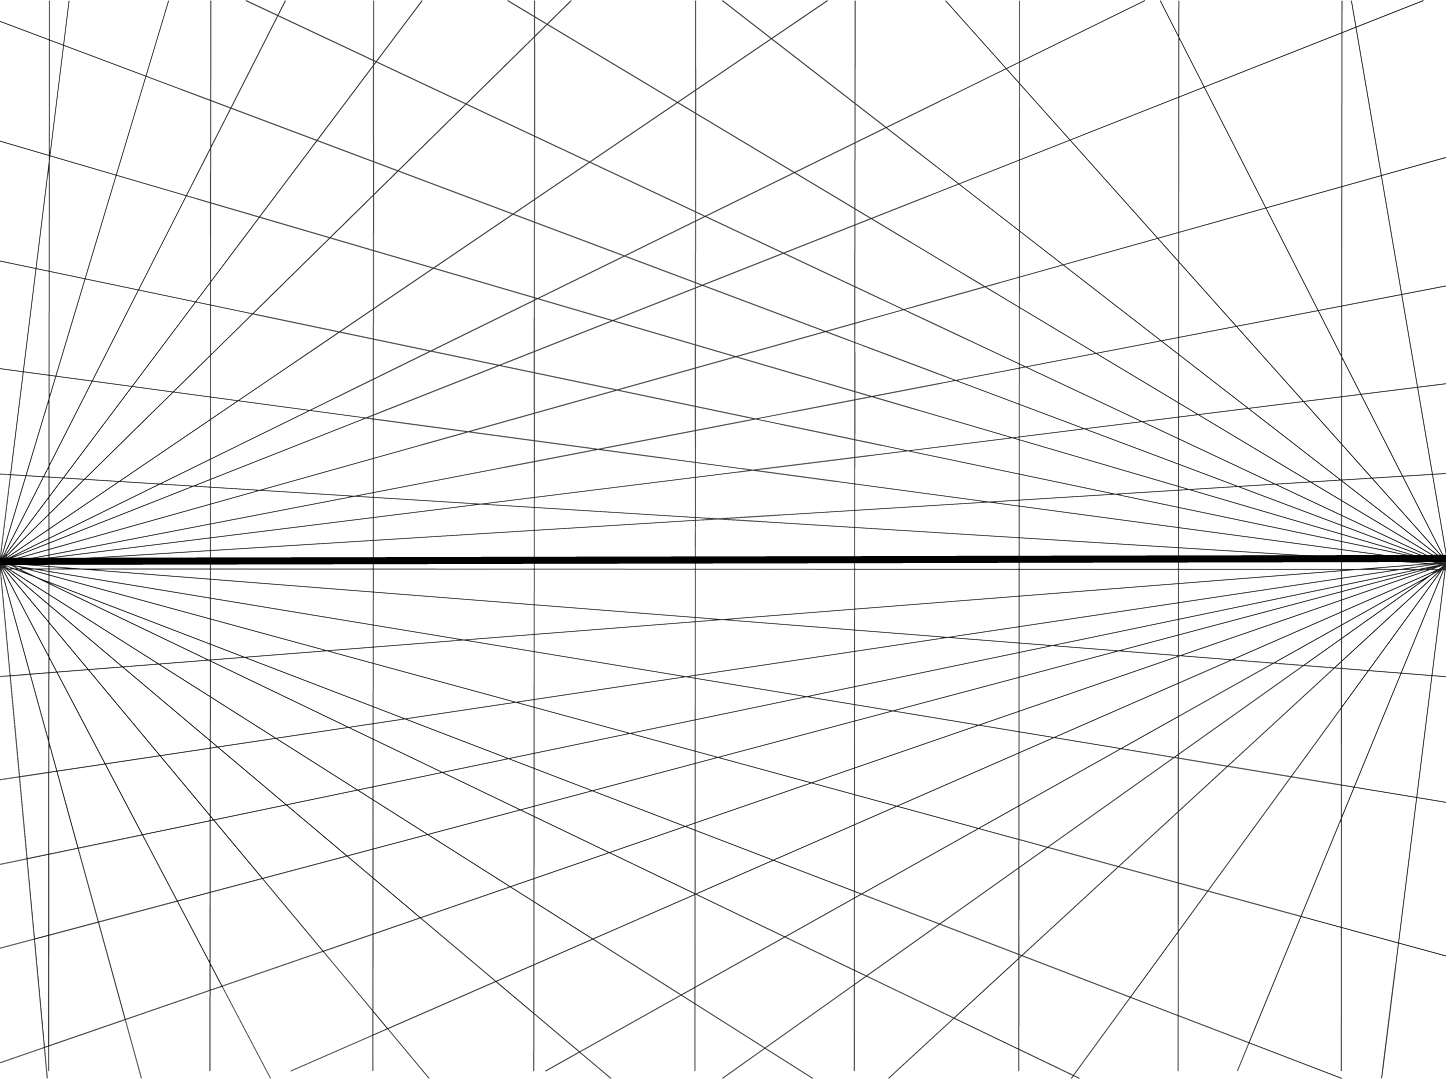 Gitter für eine 2Punkt Perspektive -Zeichenhilfe